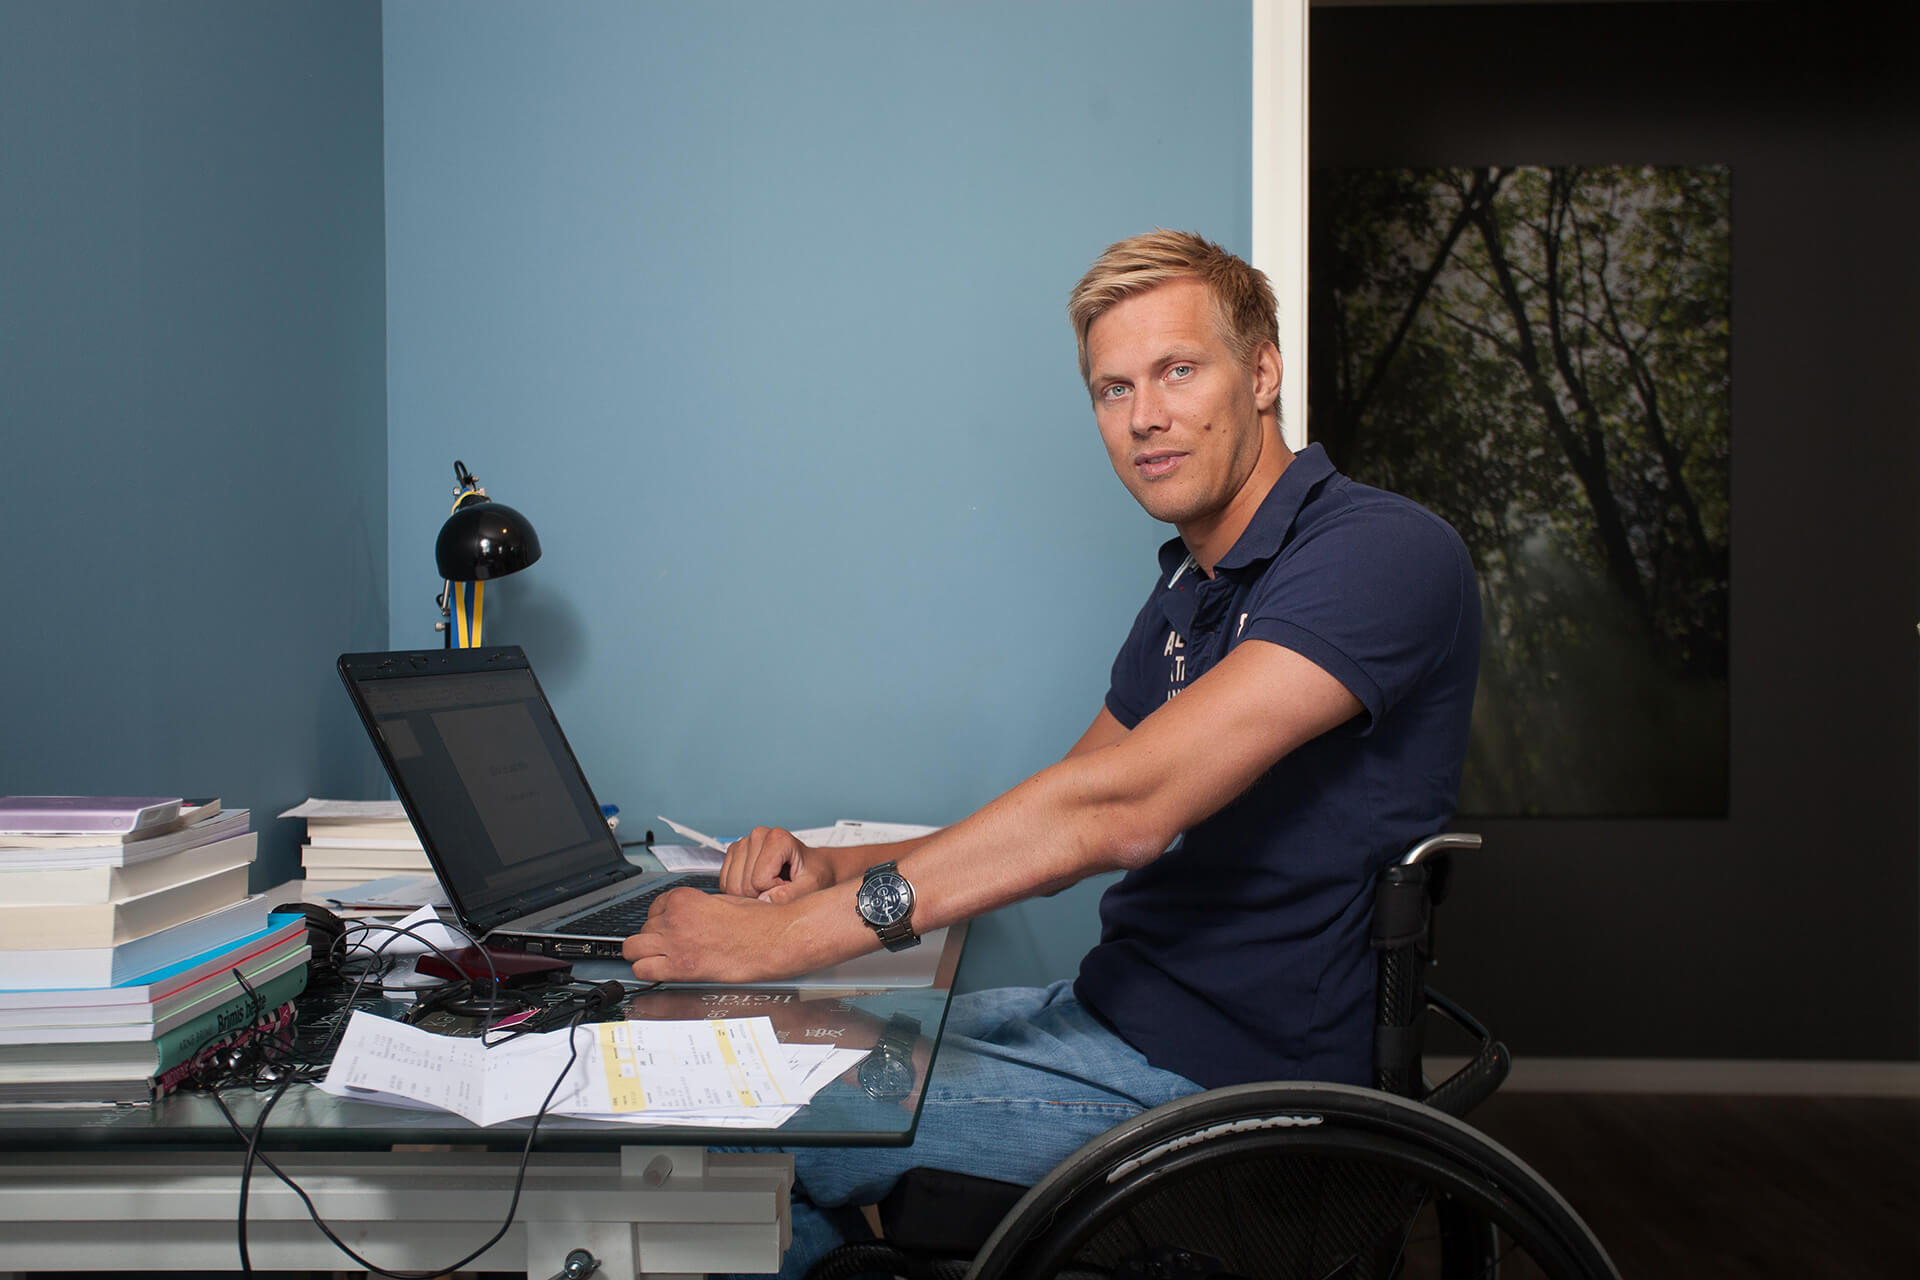 Bilde av artikkelskribent som sitter og jobber foran en laptop i rullestol. Han lener armene mot skrivebordet mens han kikker mot kameraet.